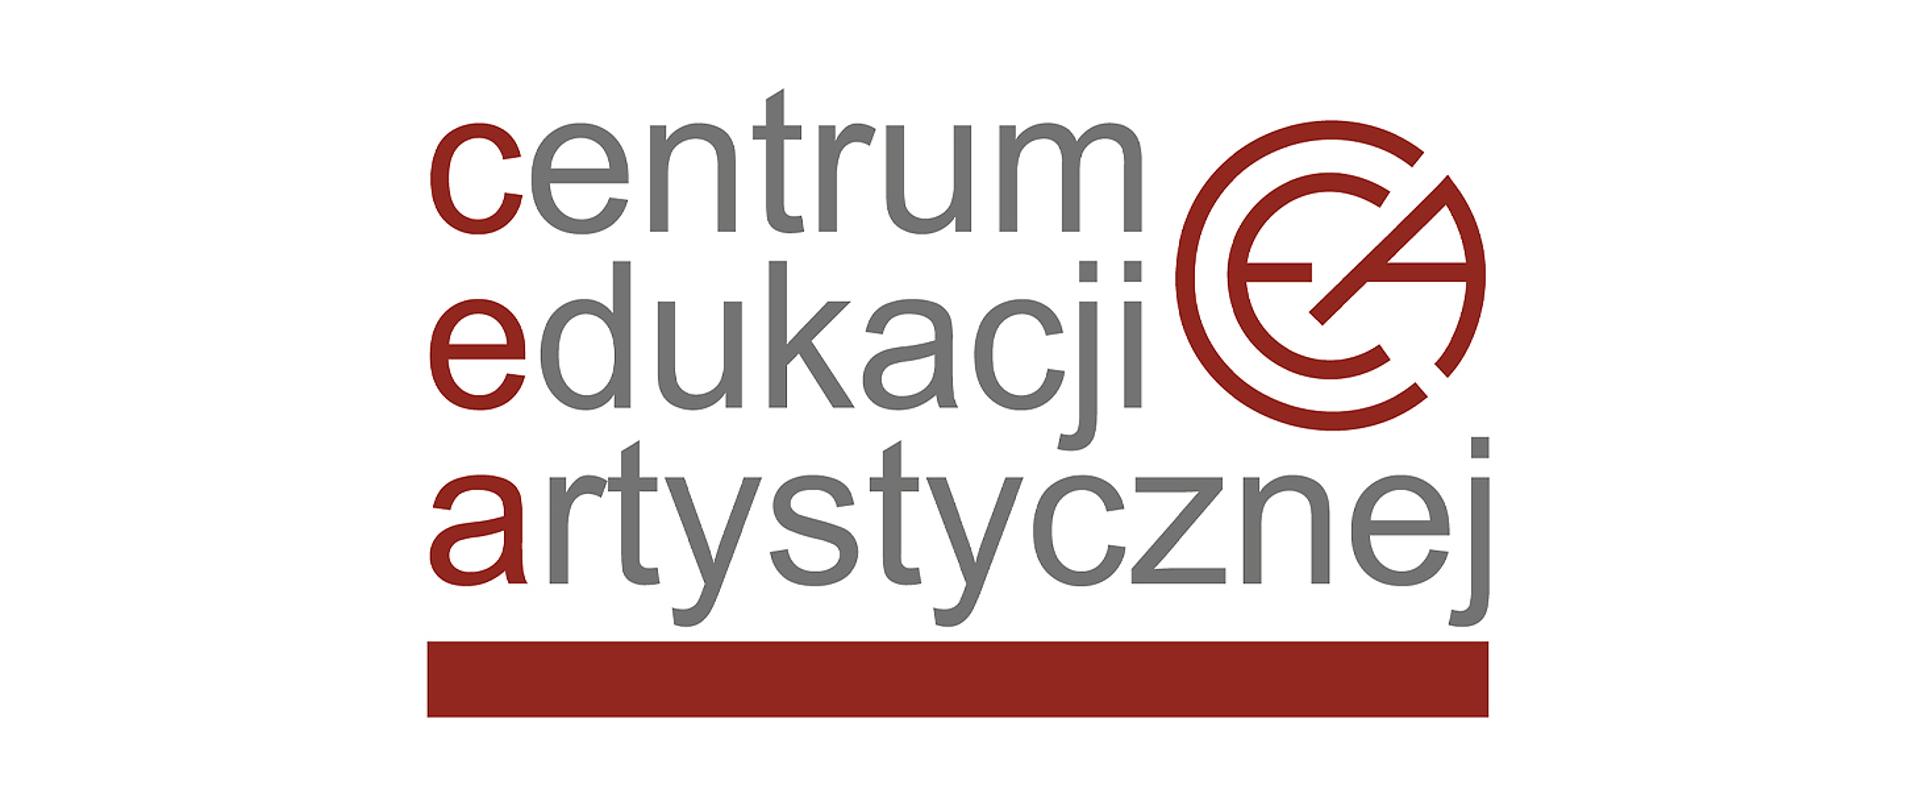 Logo CEA zbudowane z dwóch części - napisu w trzech wierszach Centrum Edukacji Artystycznej. Pierwsze litery wyróżnione kolorem ciemnoczerwonym, reszta w kolorze szarym. Całość podkreślona ciemnoczerwoną stopką. W prawym górnym rogu umieszczona jest ikonografika liter CEA w kolorze ciemnoczerwonym w kształcie koła.